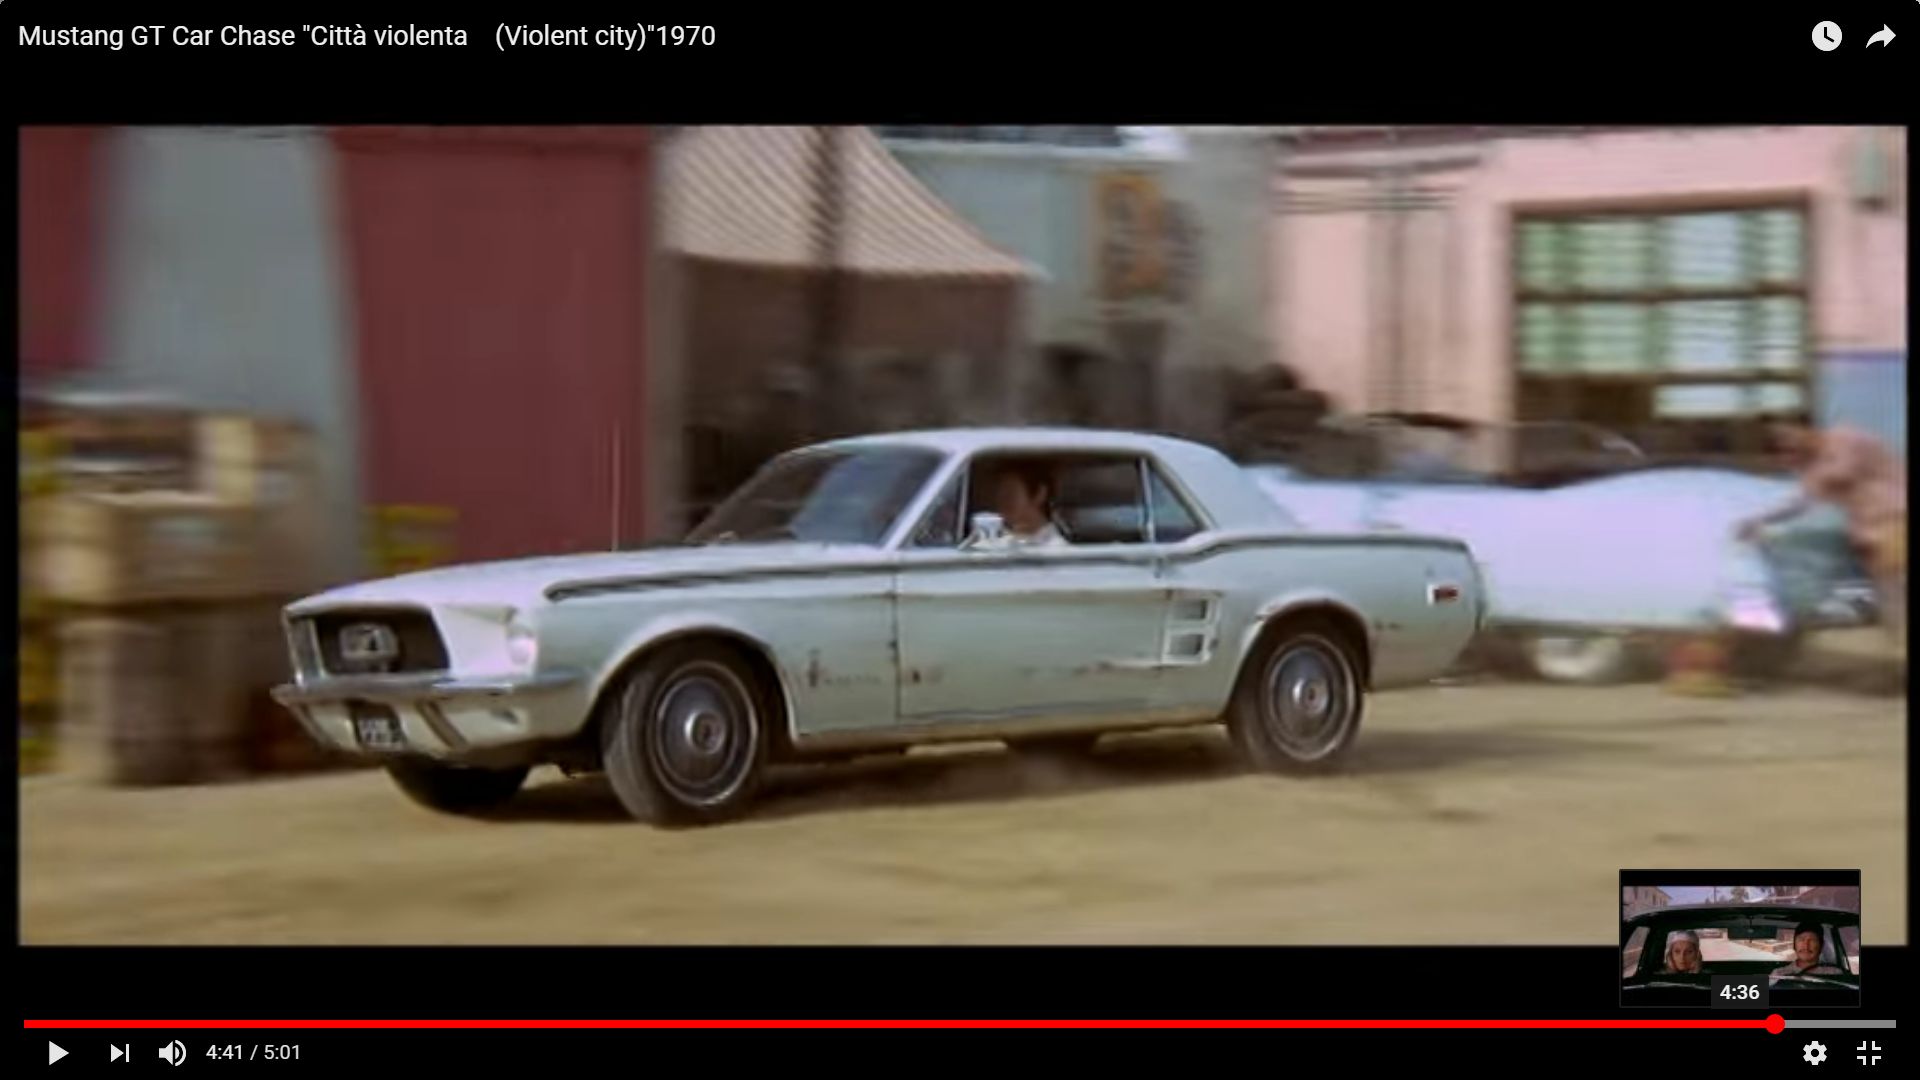 Mustang GT Car Chase, film la cité de la violence Nouve136